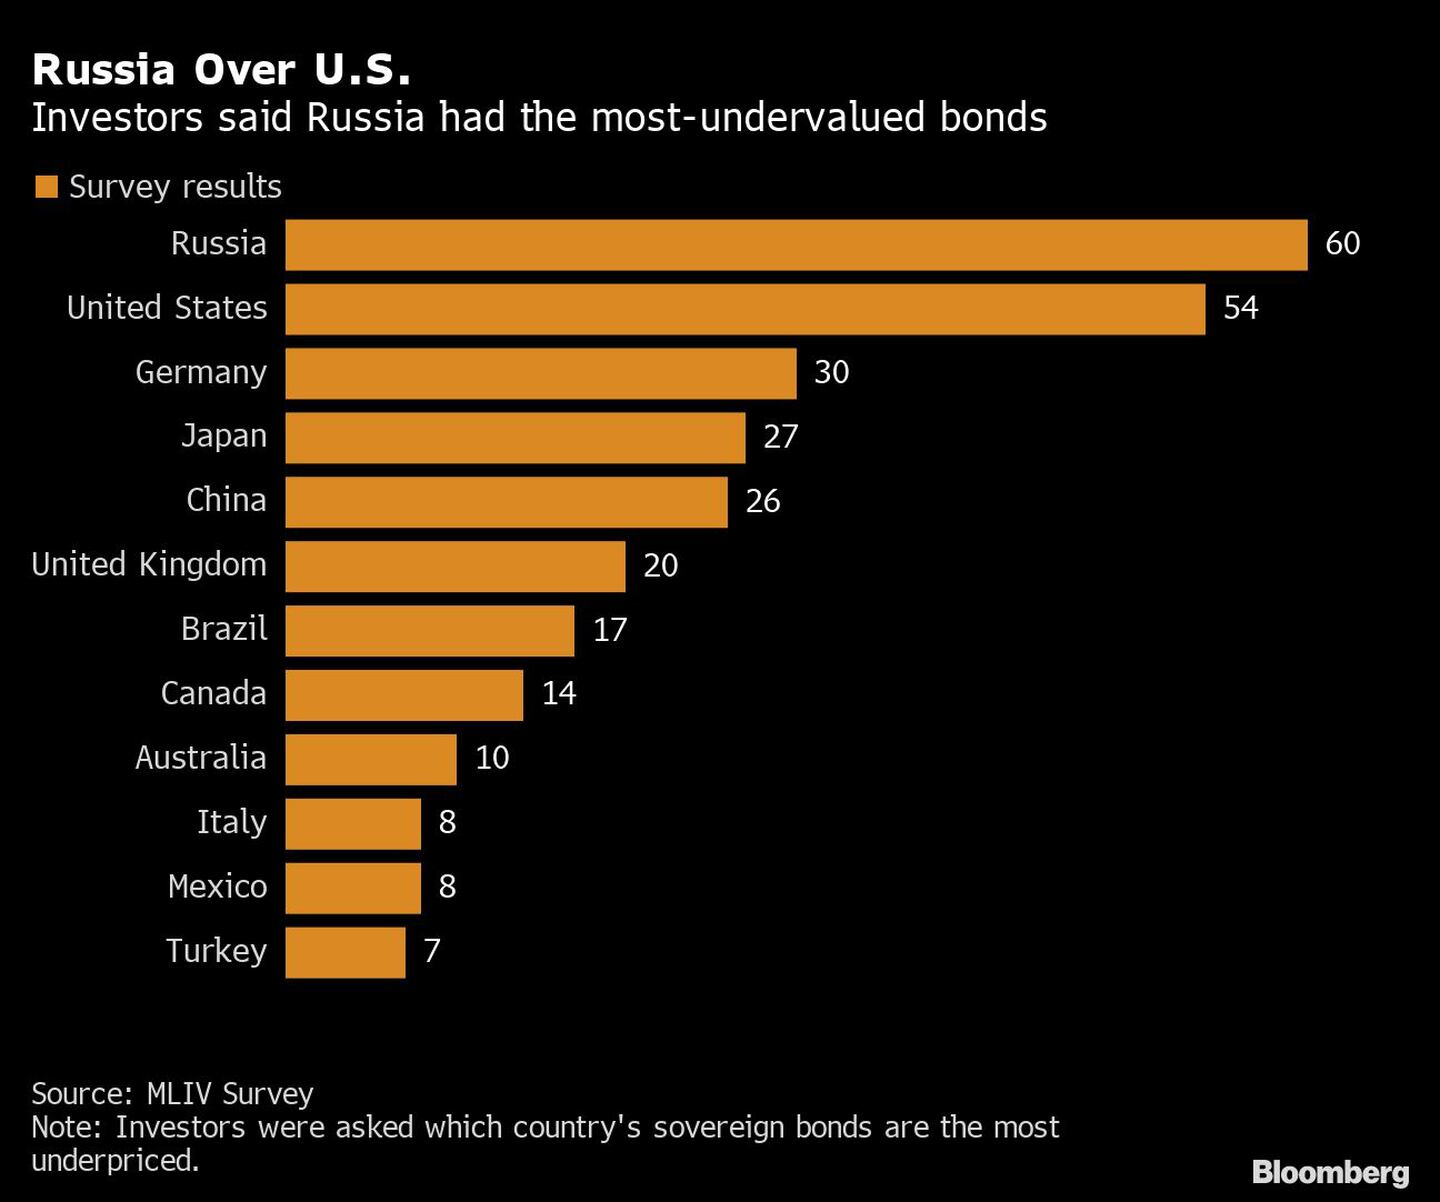 Rusia supera a EE.UU. 
Los inversores dijeron que Rusia tenía los bonos más infravalorados
Naranja: resultados de la encuesta
Rusia, Estados Unidos, Alemania, Japón, China, Reino Unido, Brasil, Canadá, Australia, Italia, México, Turquíadfd